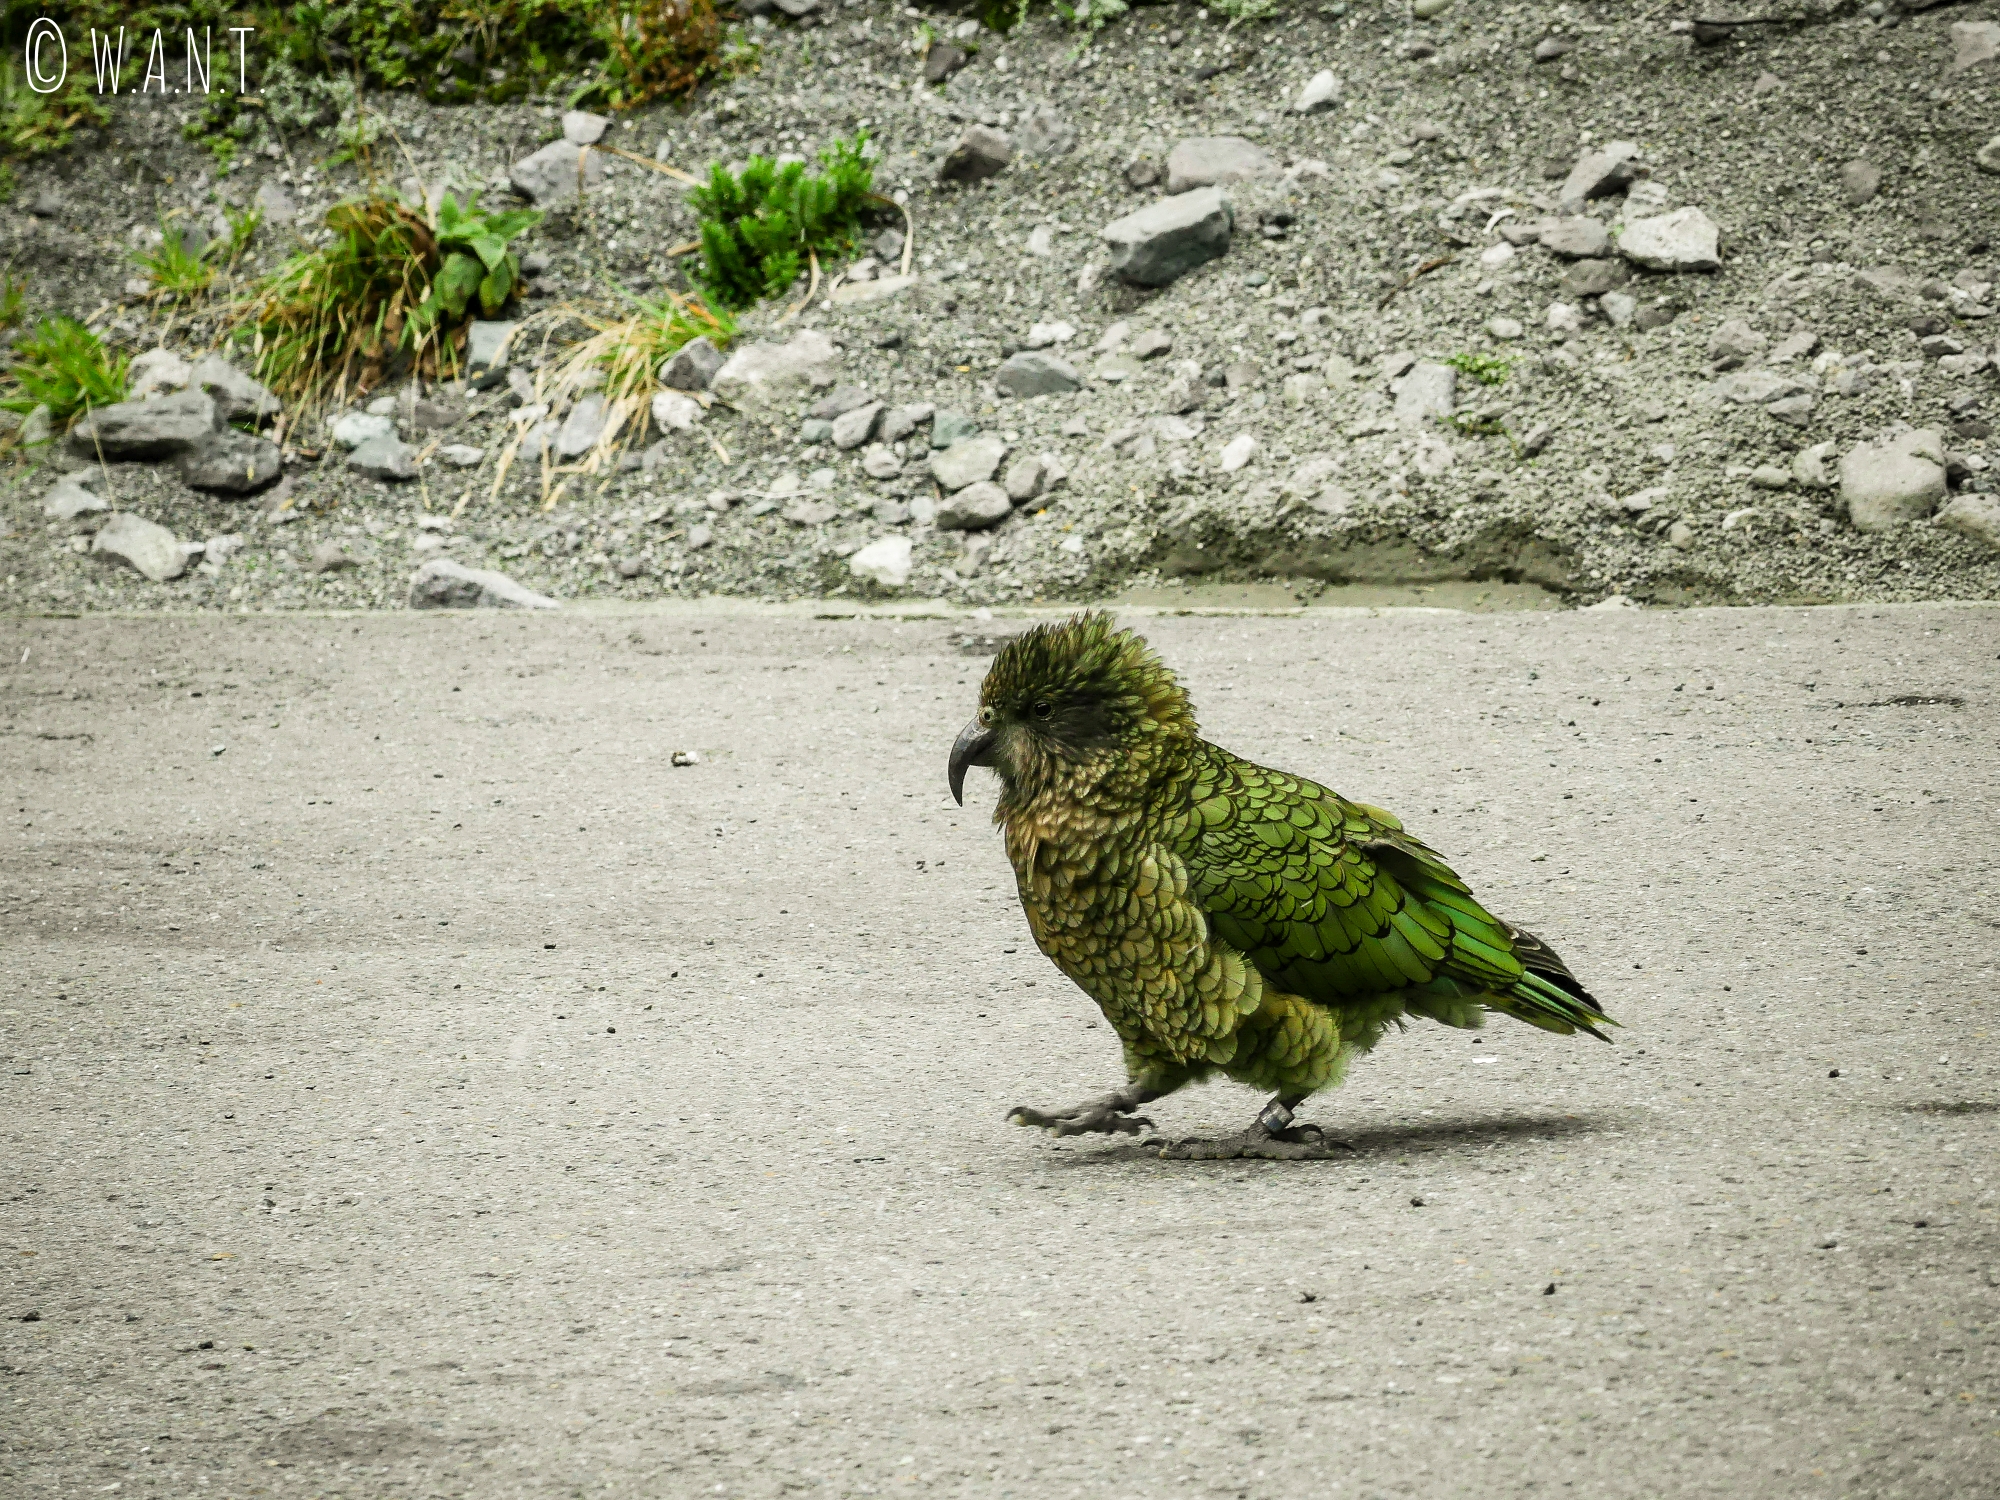 Rencontre avec un kéa sur la route de Milford Sound en Nouvelle-Zélande